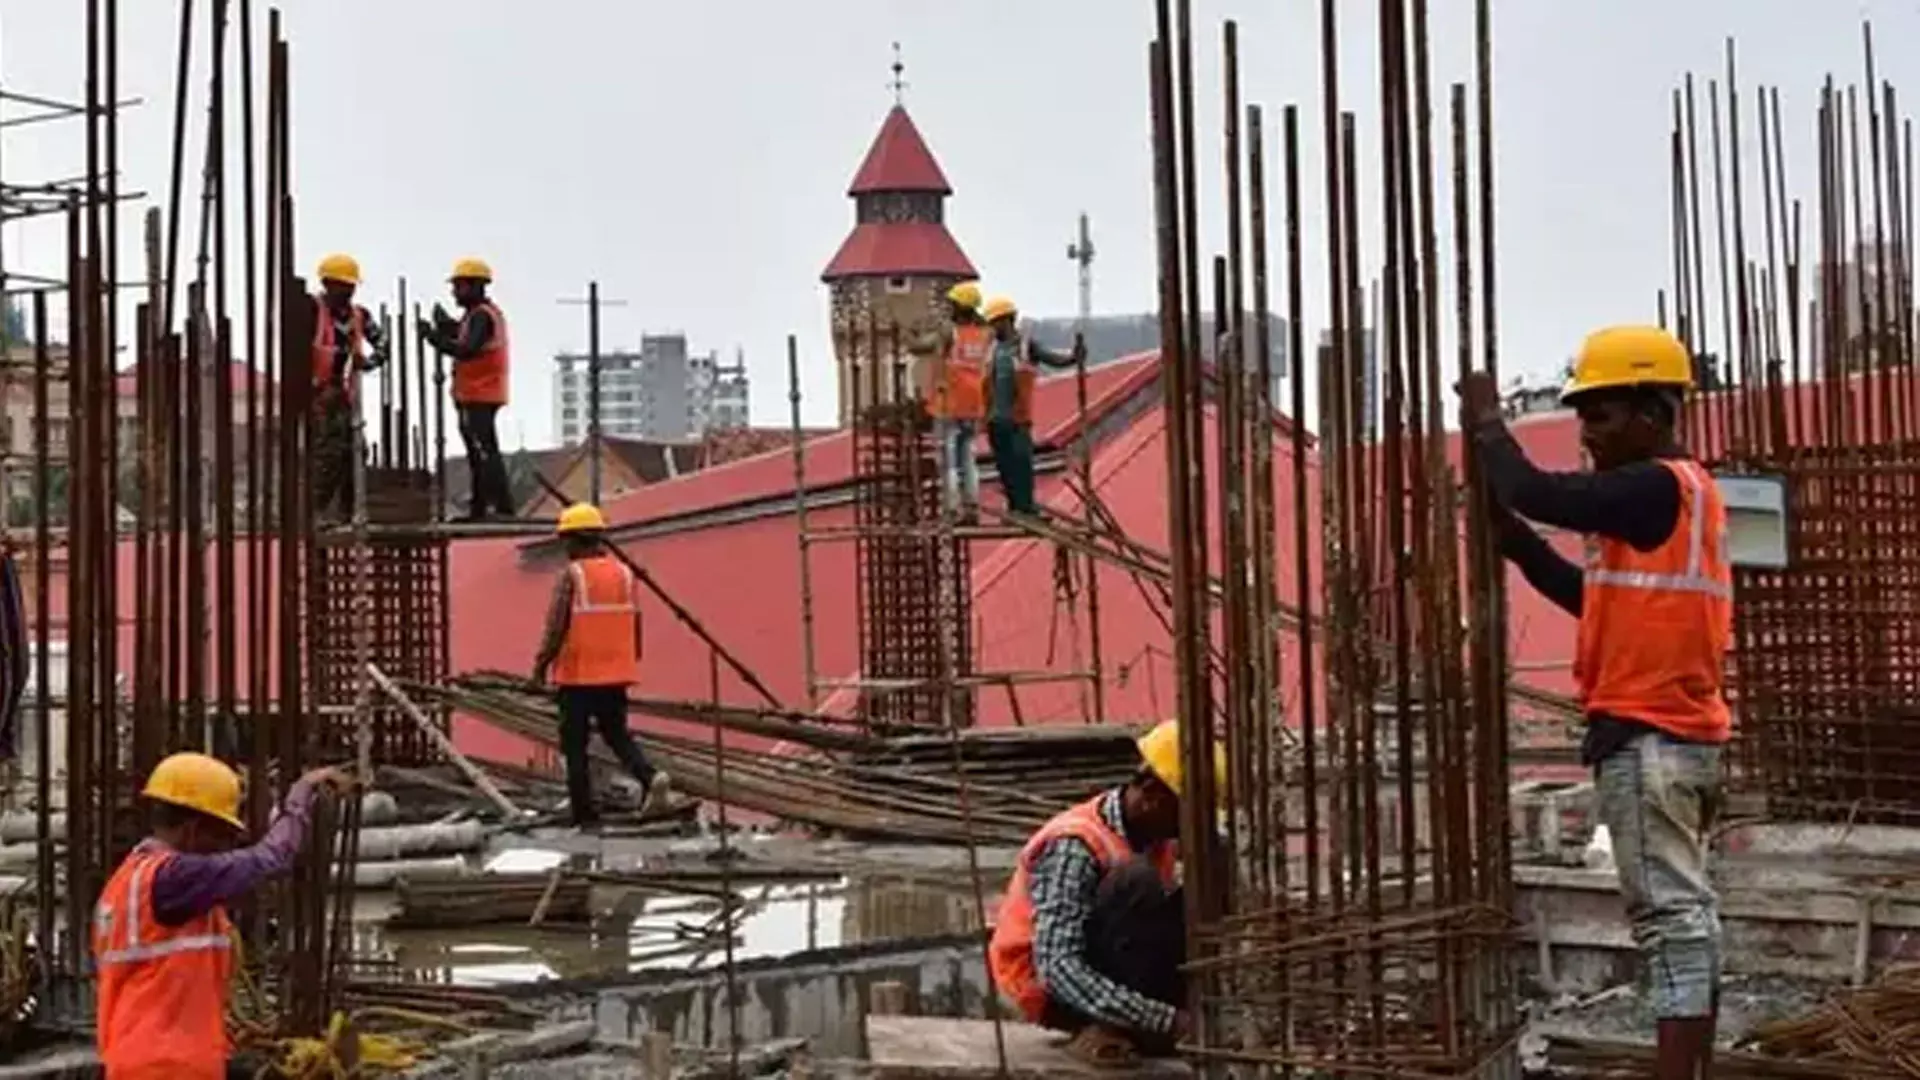 MUMBAI: महारेरा ने 1,750 बंद पड़ी आवासीय परियोजनाओं का पंजीकरण निलंबित किया